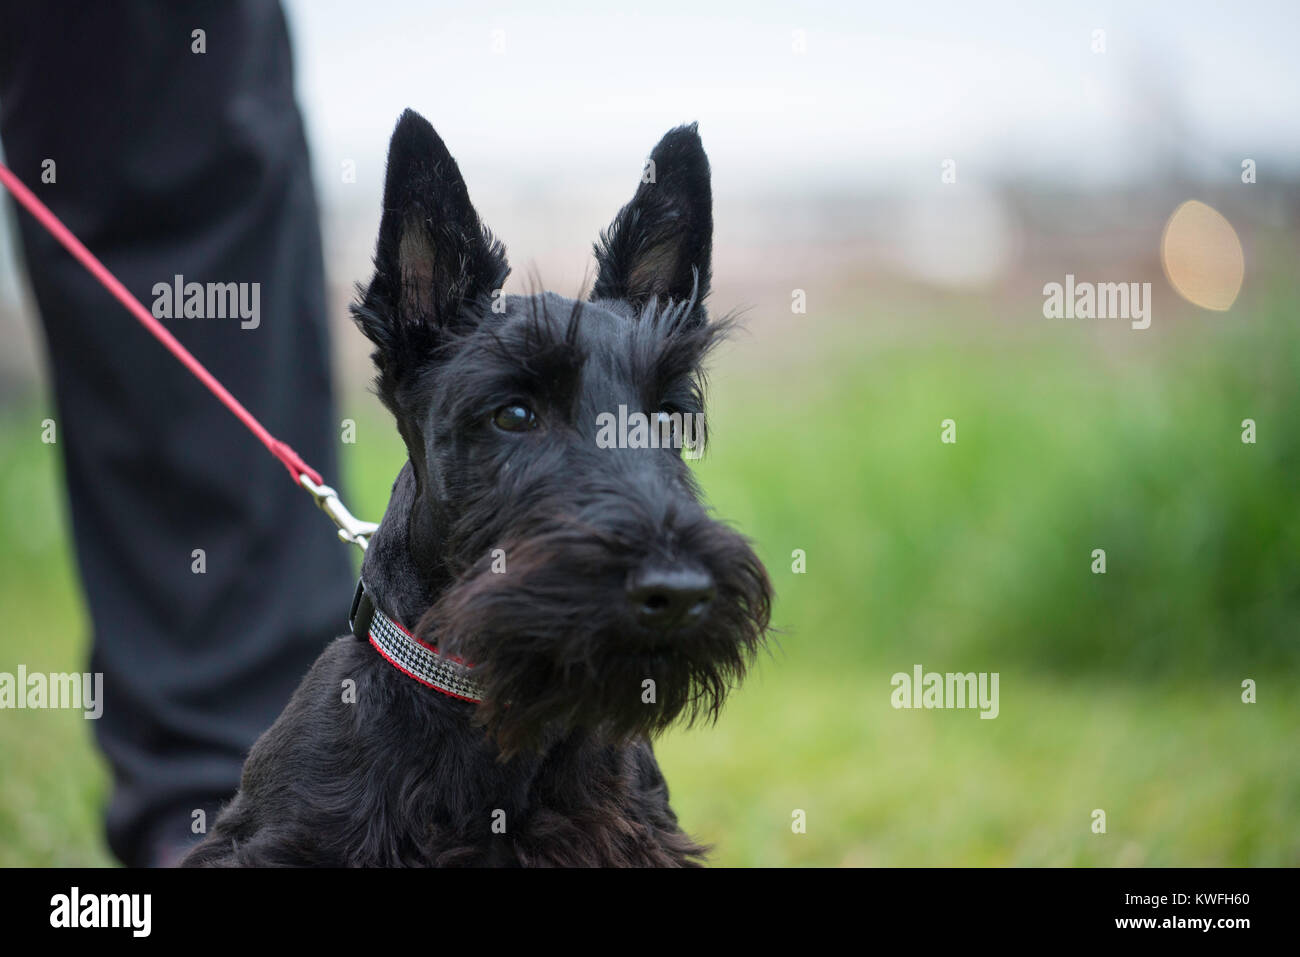 Horizontale Schuß von Alert schwarz Scottish Terrier an der Leine; grün Soft Focus Hintergrund. Hund auf die rote Leitung mit dem Besitzer Handler mit schwarzer Hose. Stockfoto